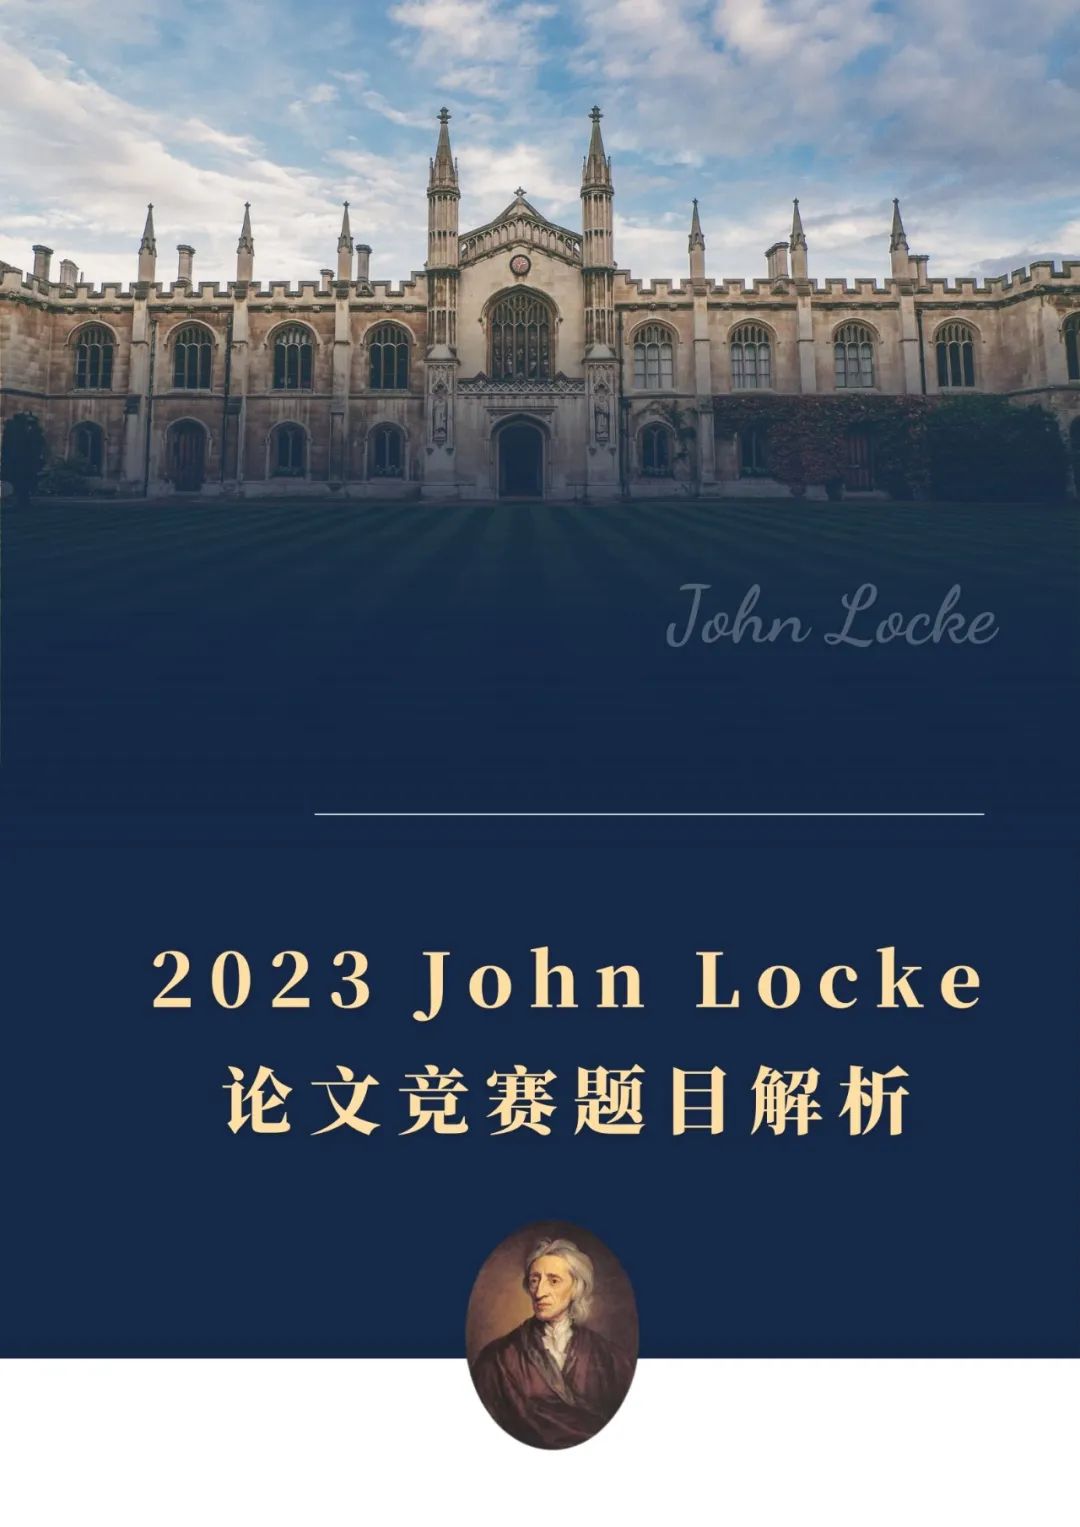 超强干货！2023 John Locke论文竞赛题目全面解析！